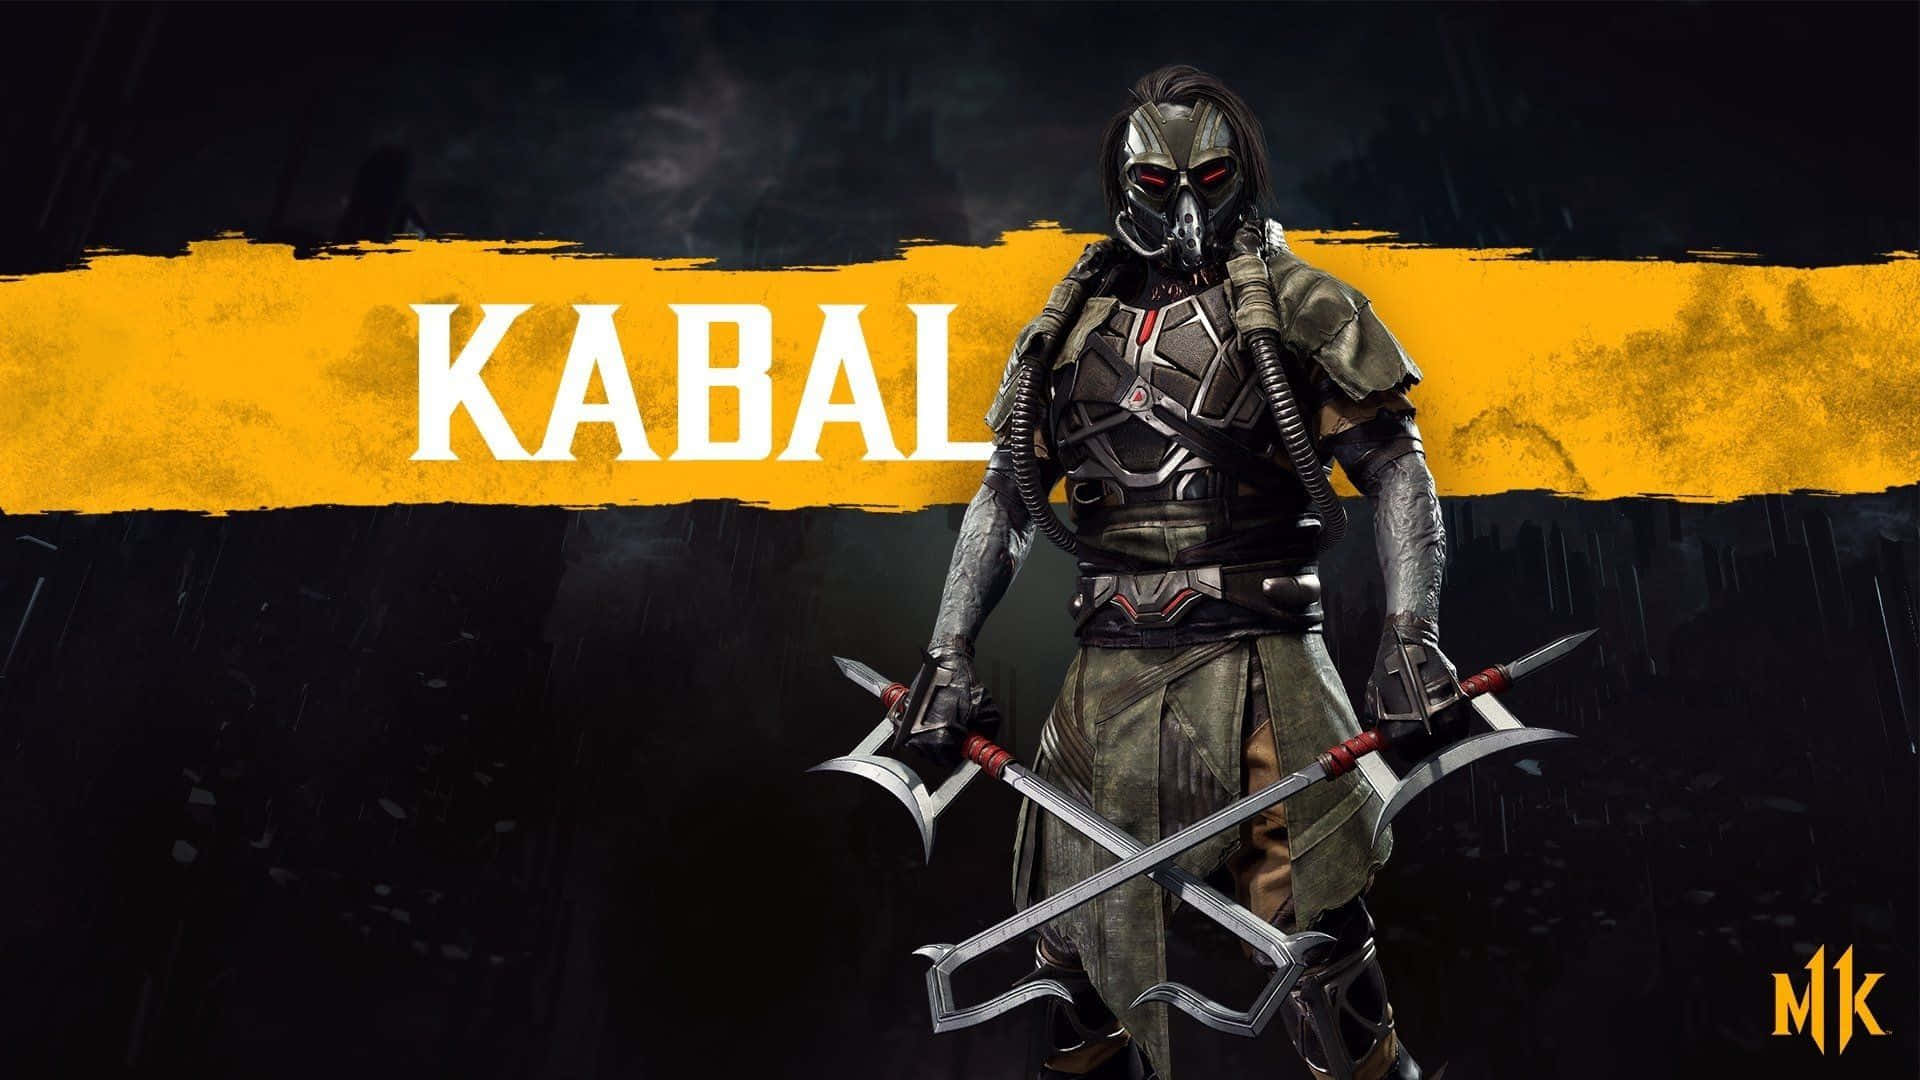 Kabal unleashing whirlwind attack in Mortal Kombat Wallpaper